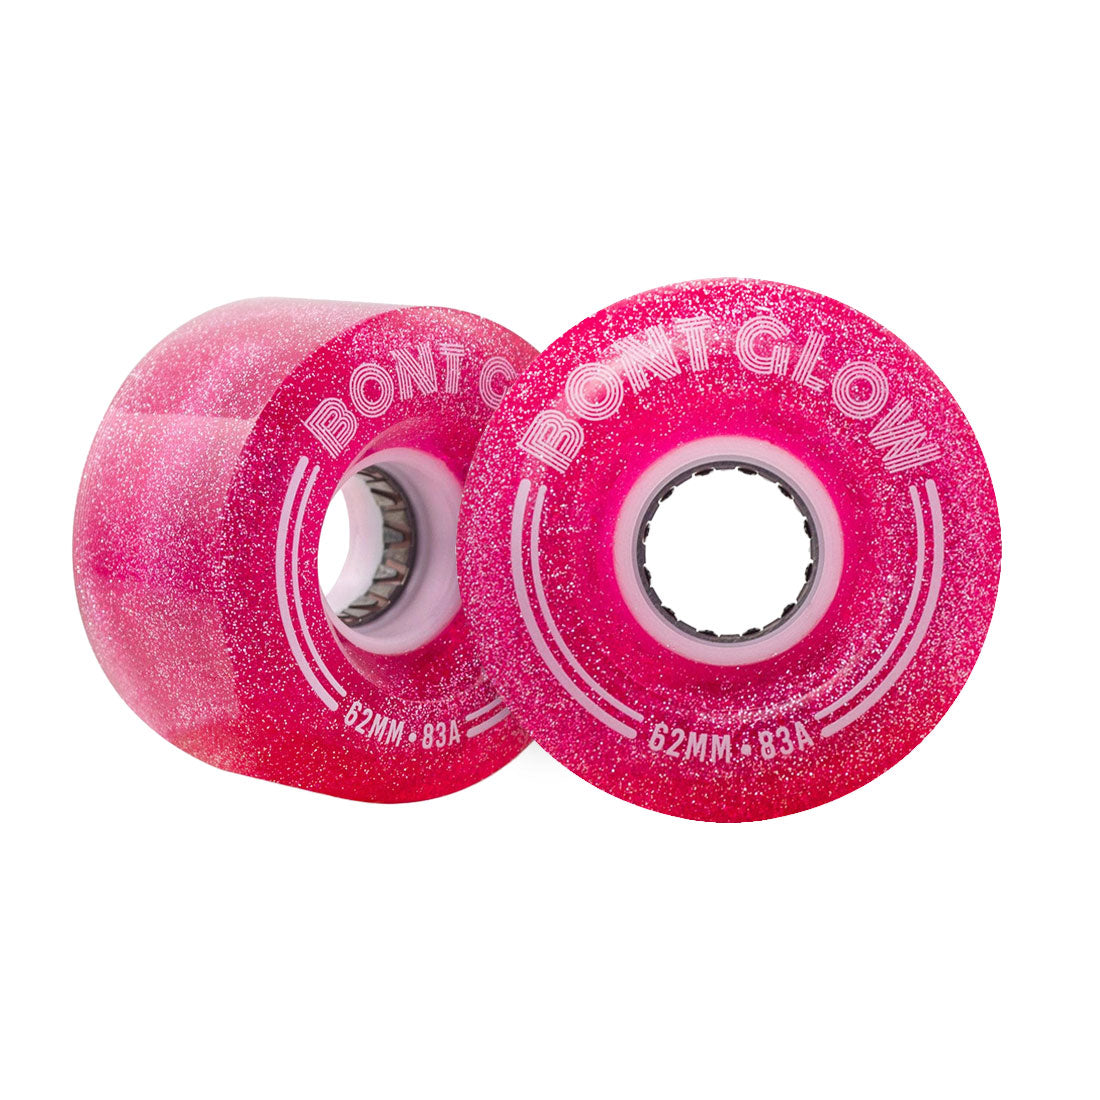 Bont Glow LED 62mm 83a 4pk - Love Letter Pink Roller Skate Wheels